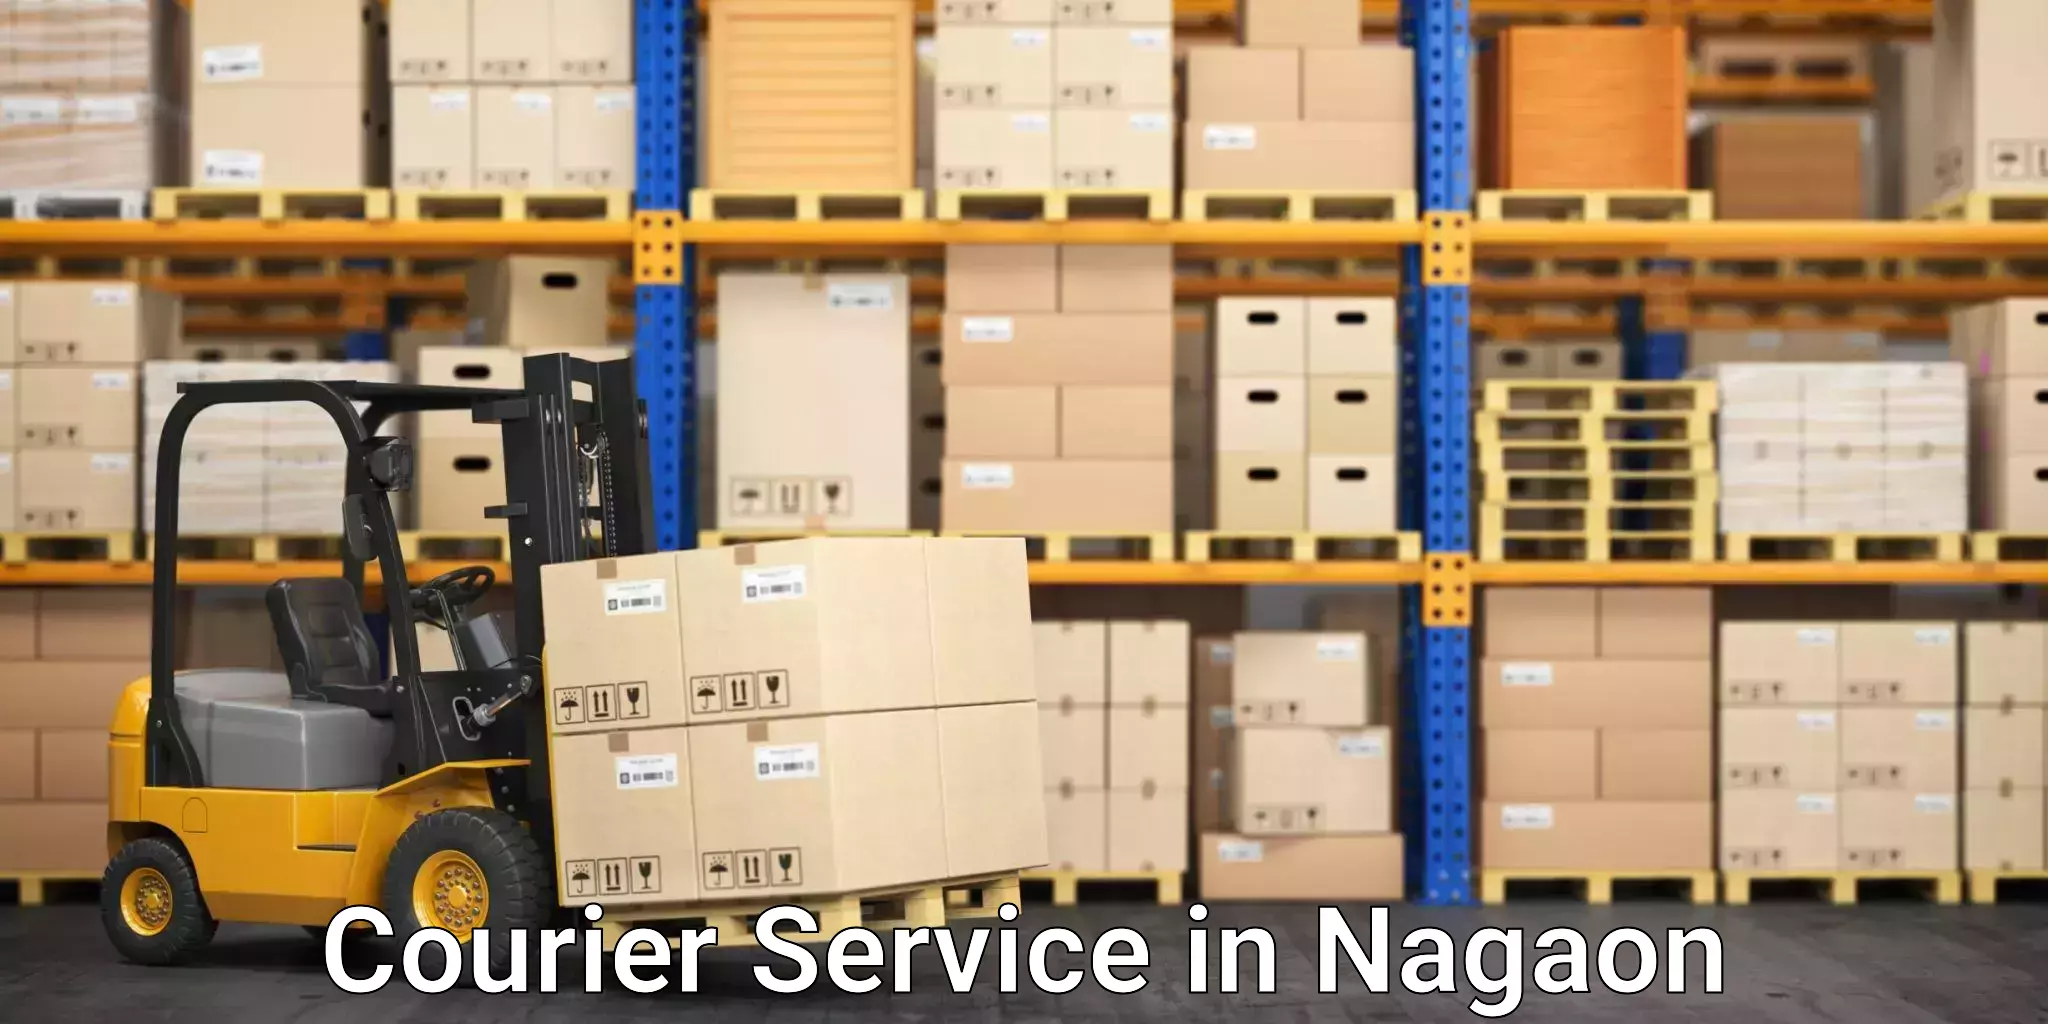 Global logistics network in Nagaon